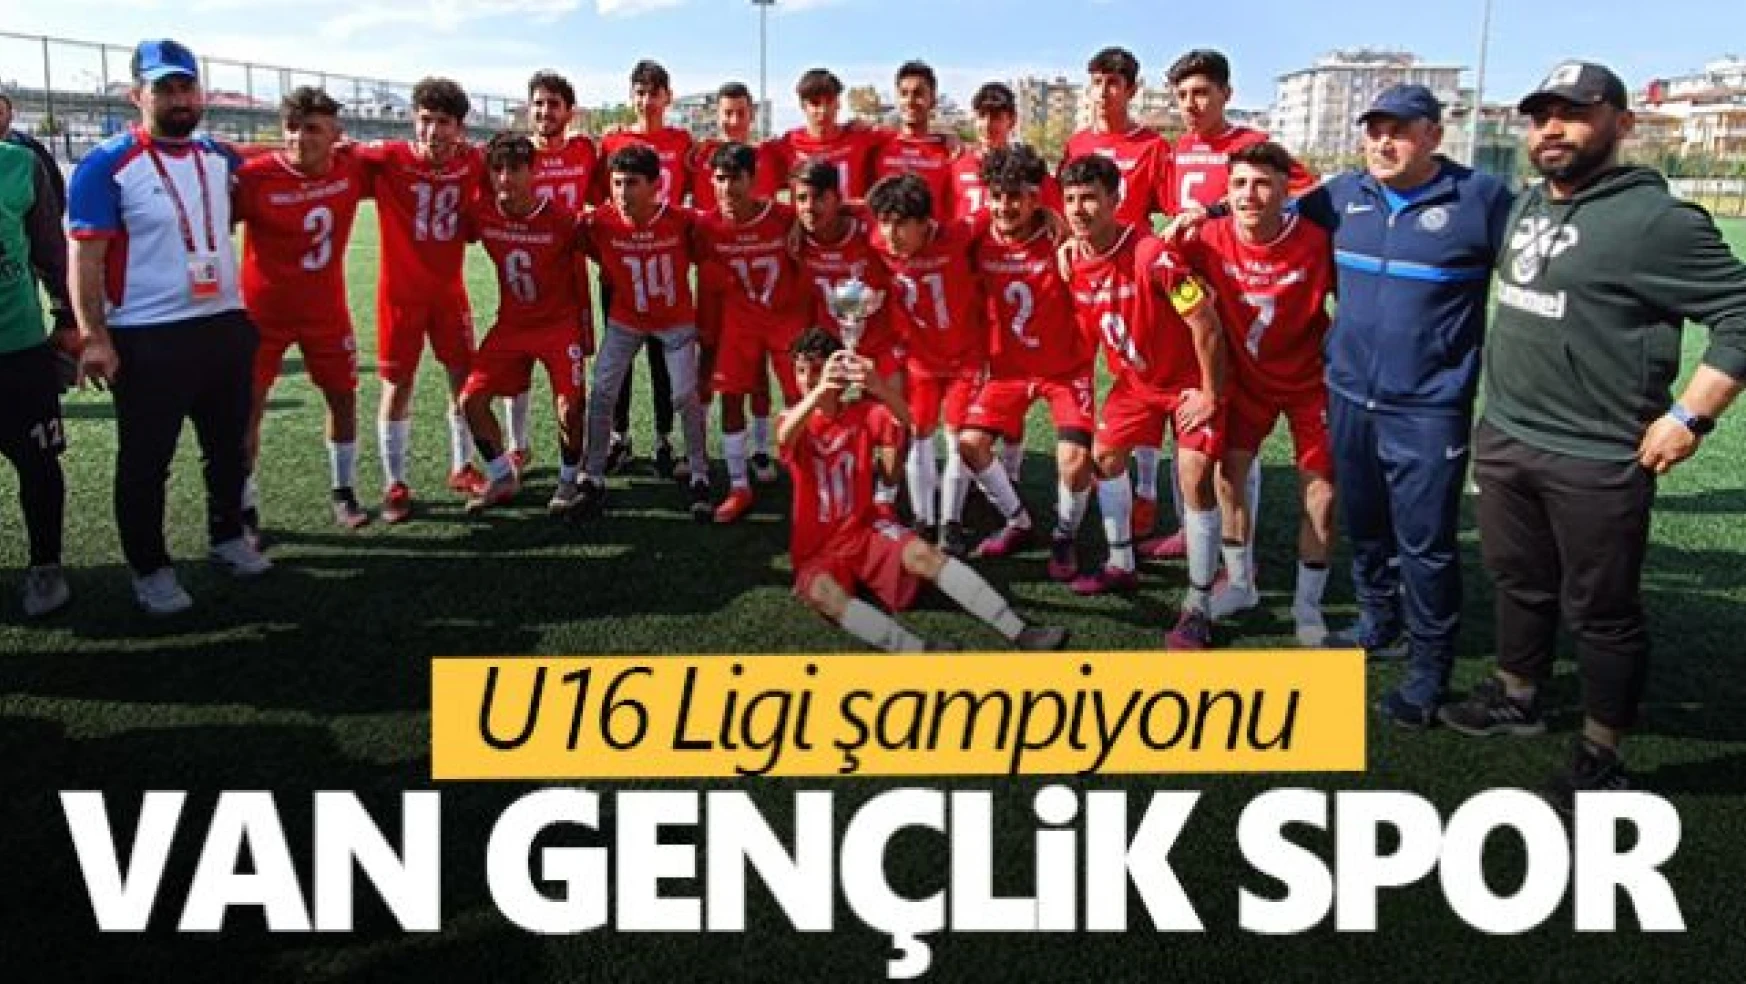 Van U16 ligi şampiyonu Van Gençlik Spor oldu!